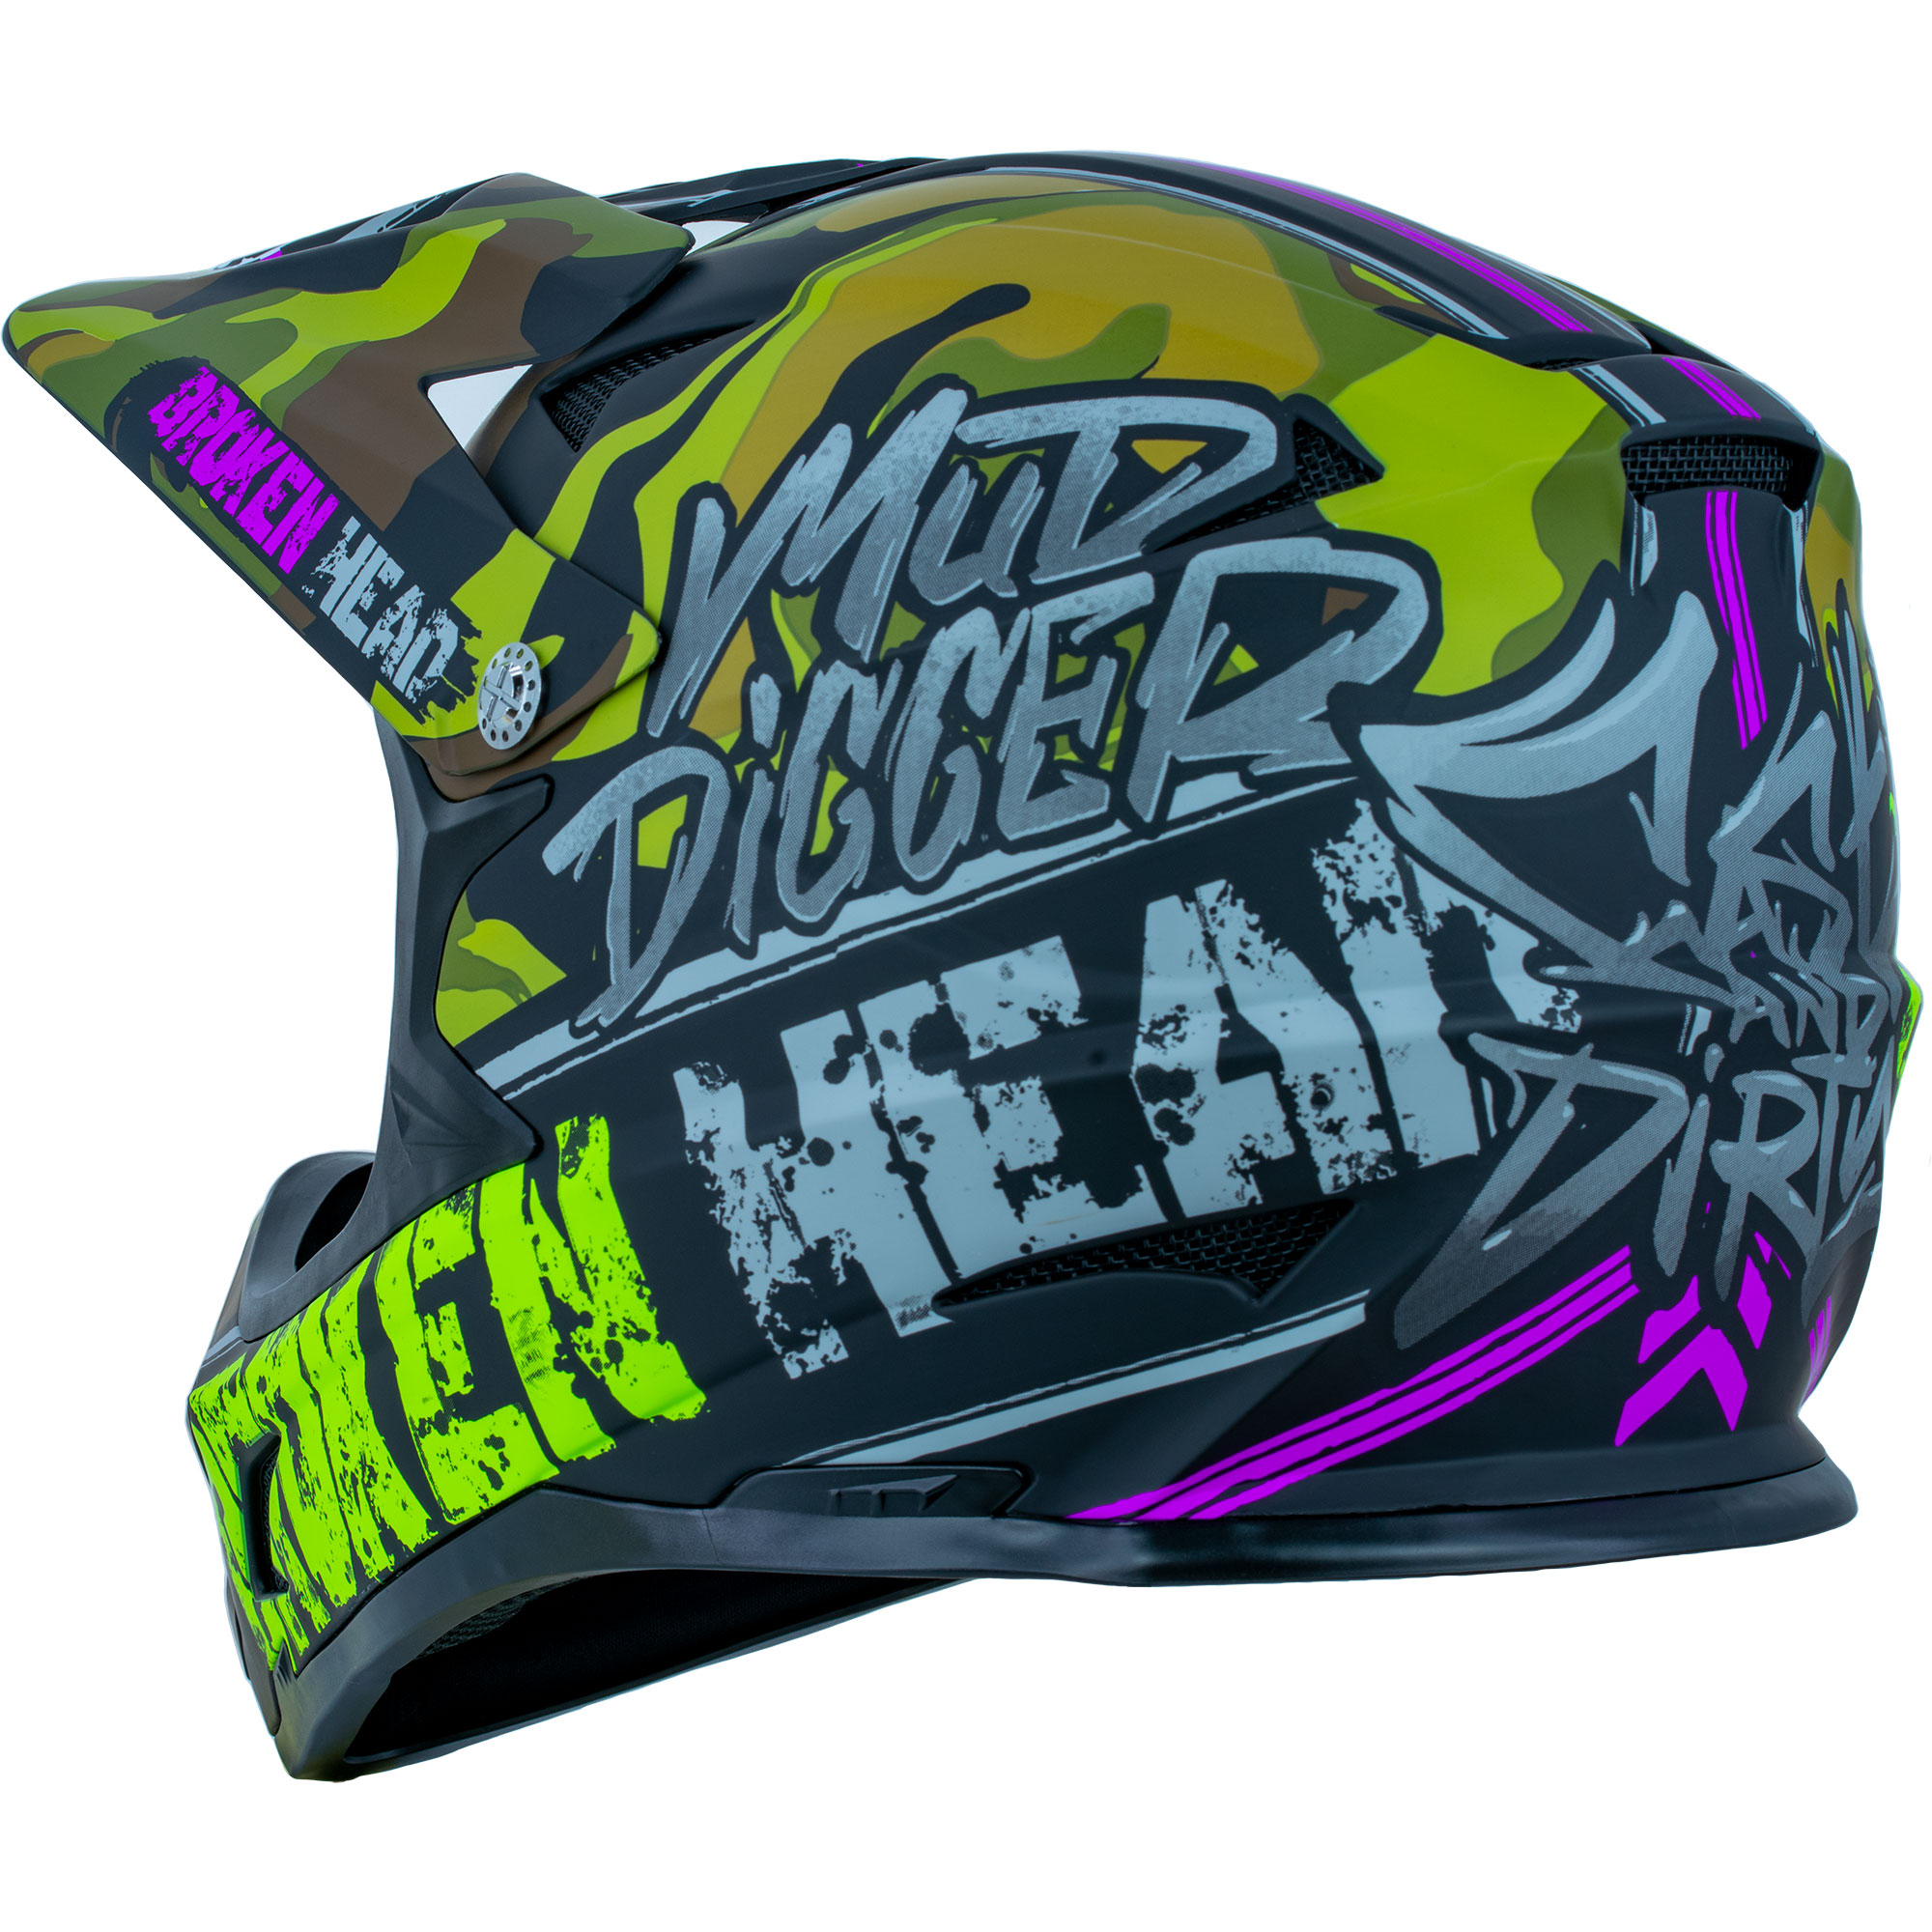 Broken Head casque de skate & casque de VTT Skate Boner